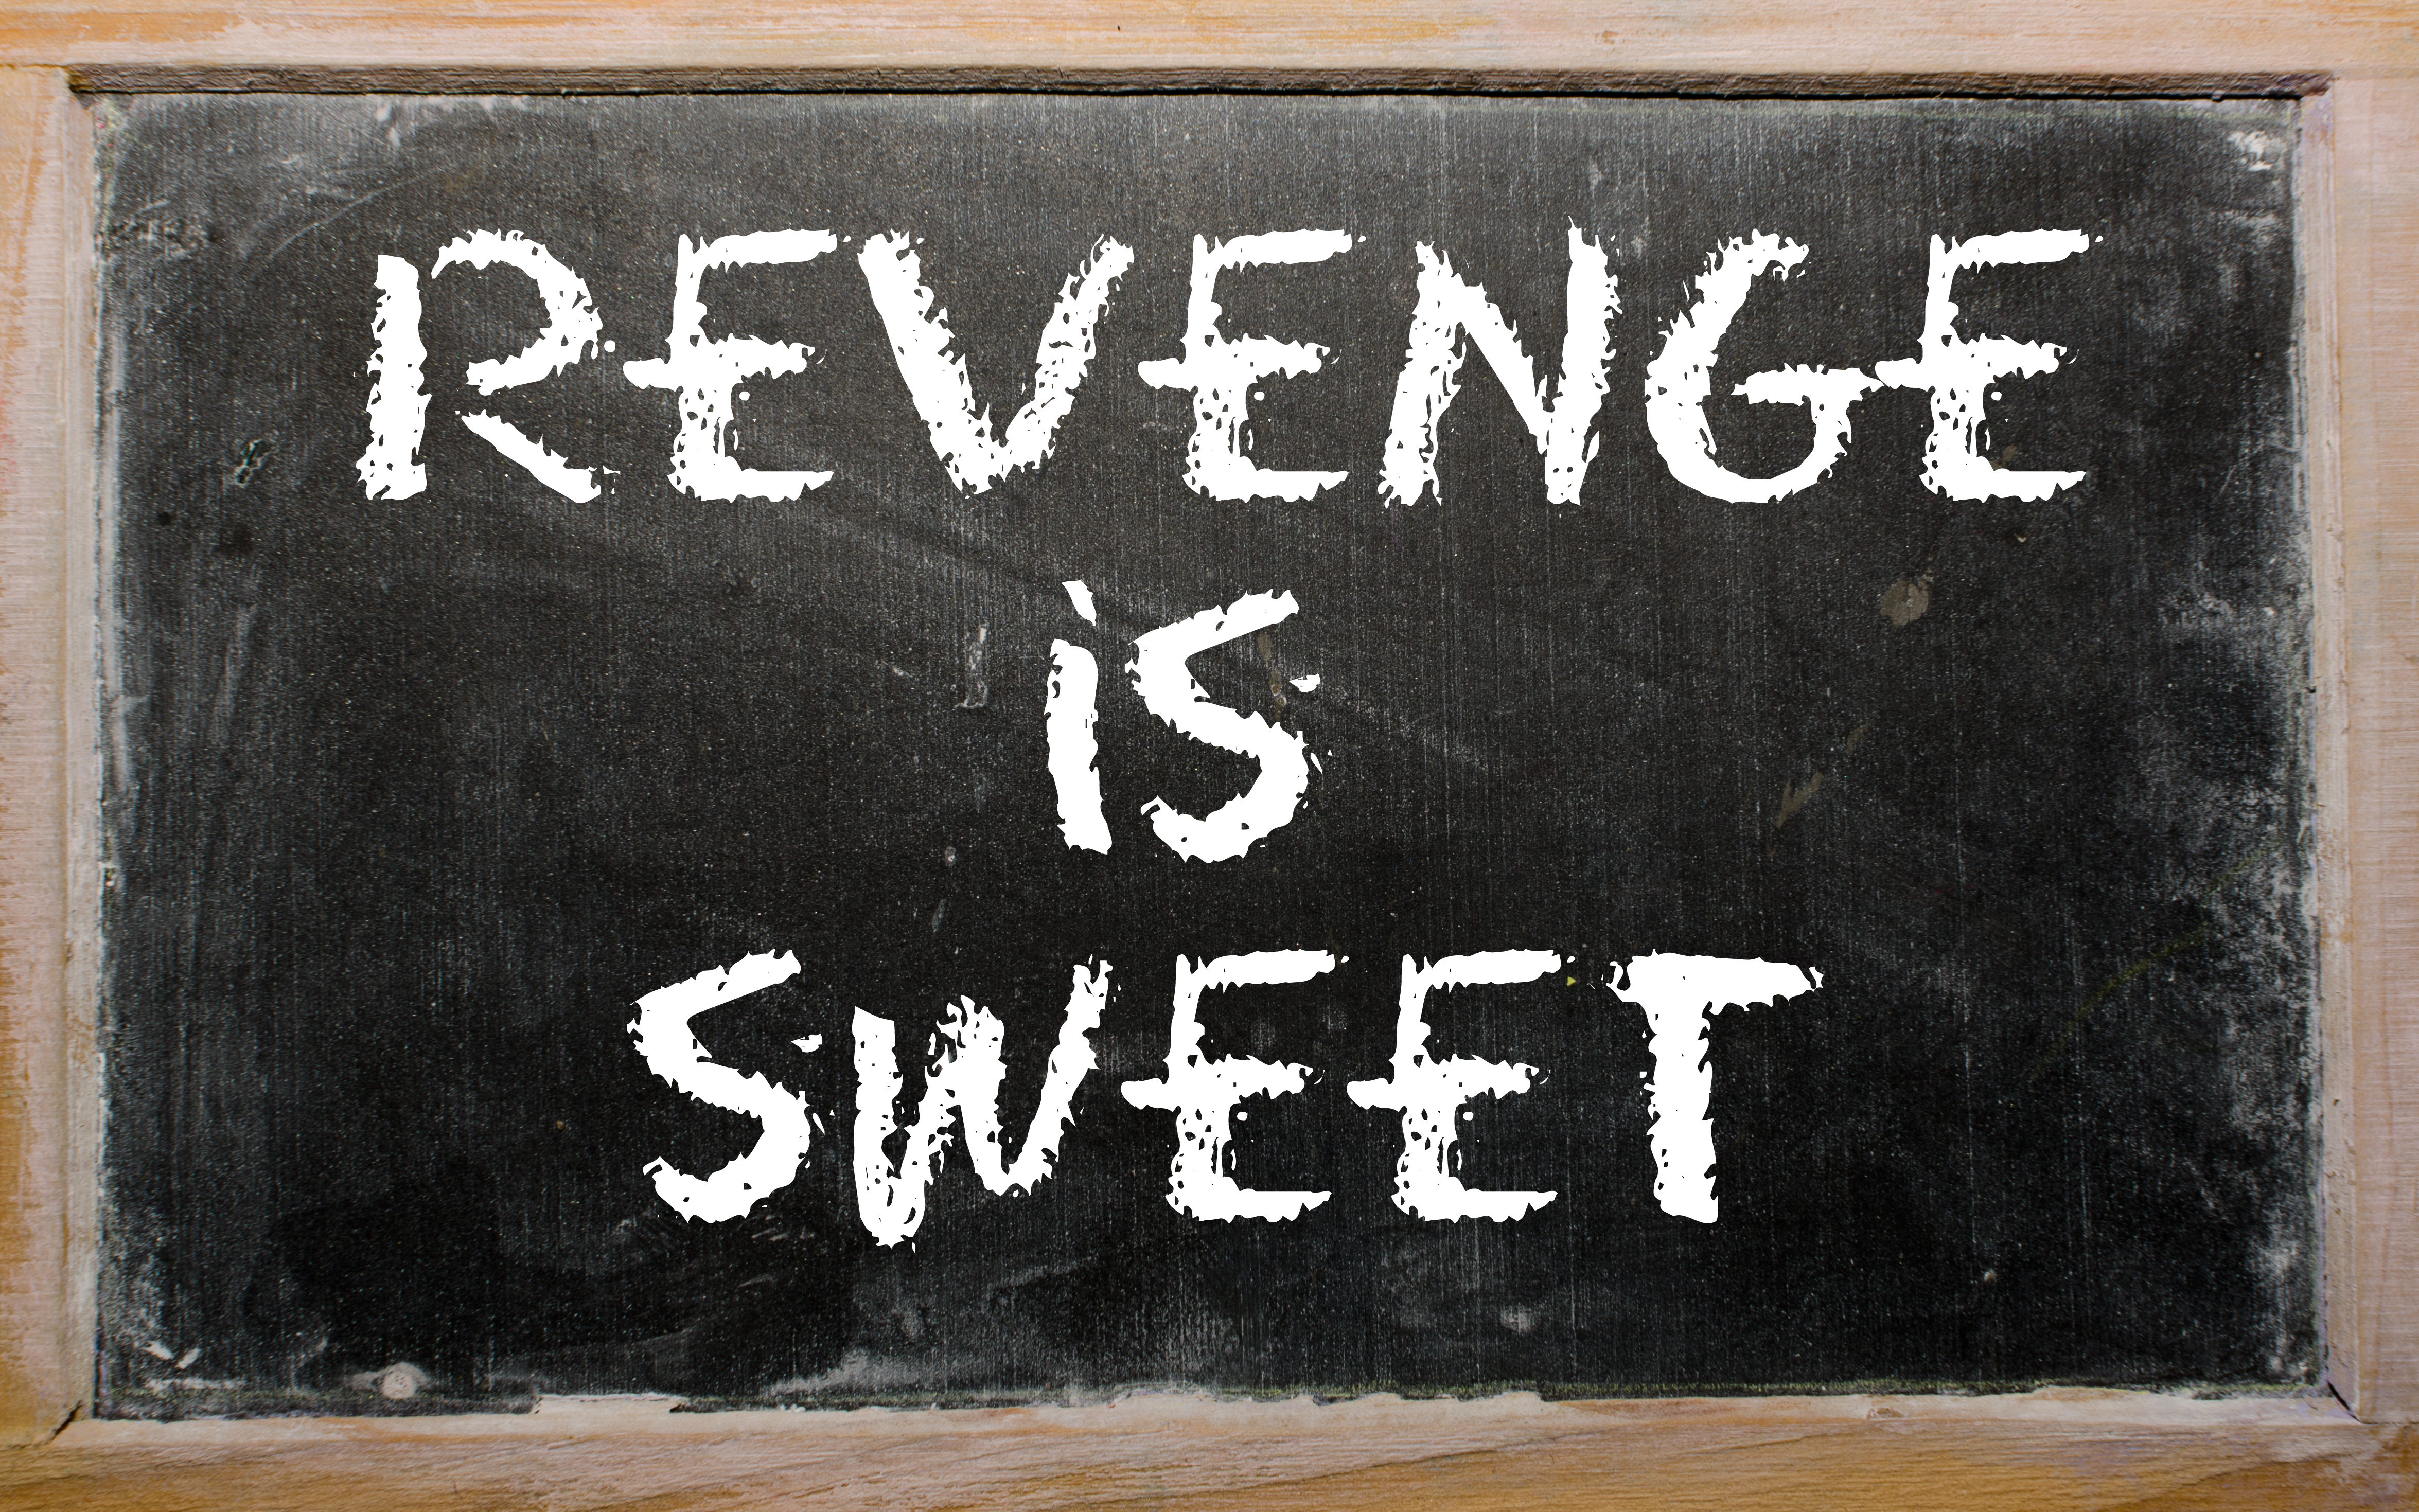 The words "Revenge Is Sweet" written on a chalk board | Source: Shutterstock